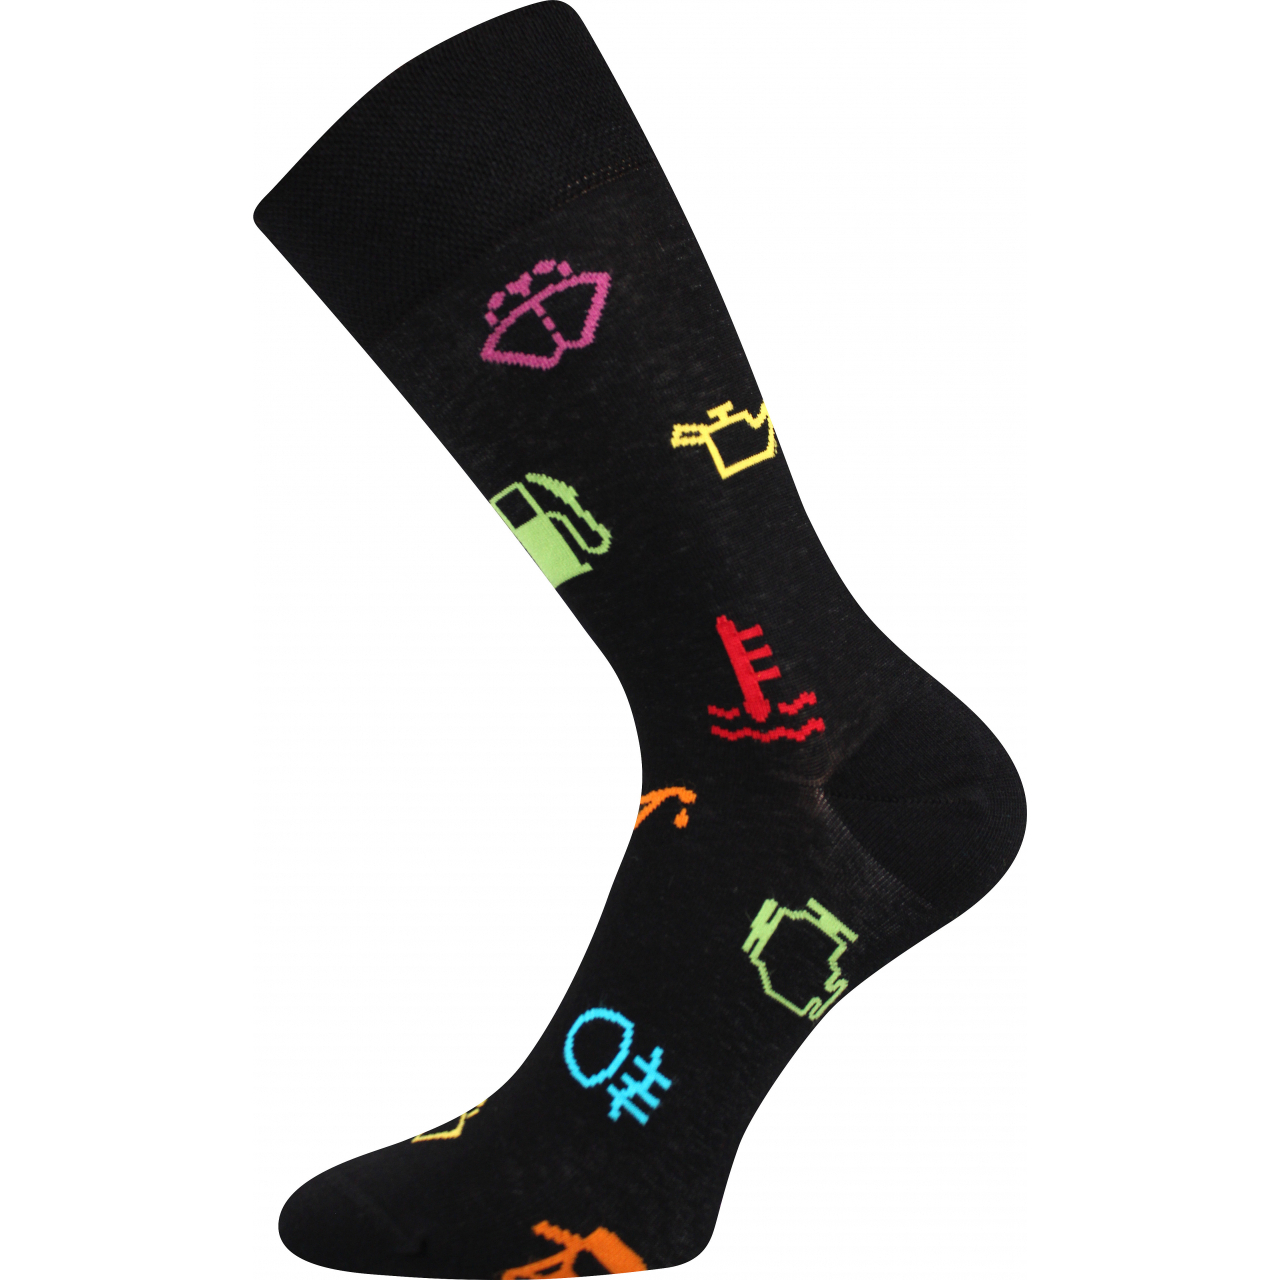 Ponožky společenské unisex Lonka Twidor Signály - černé-barevné, 39-42